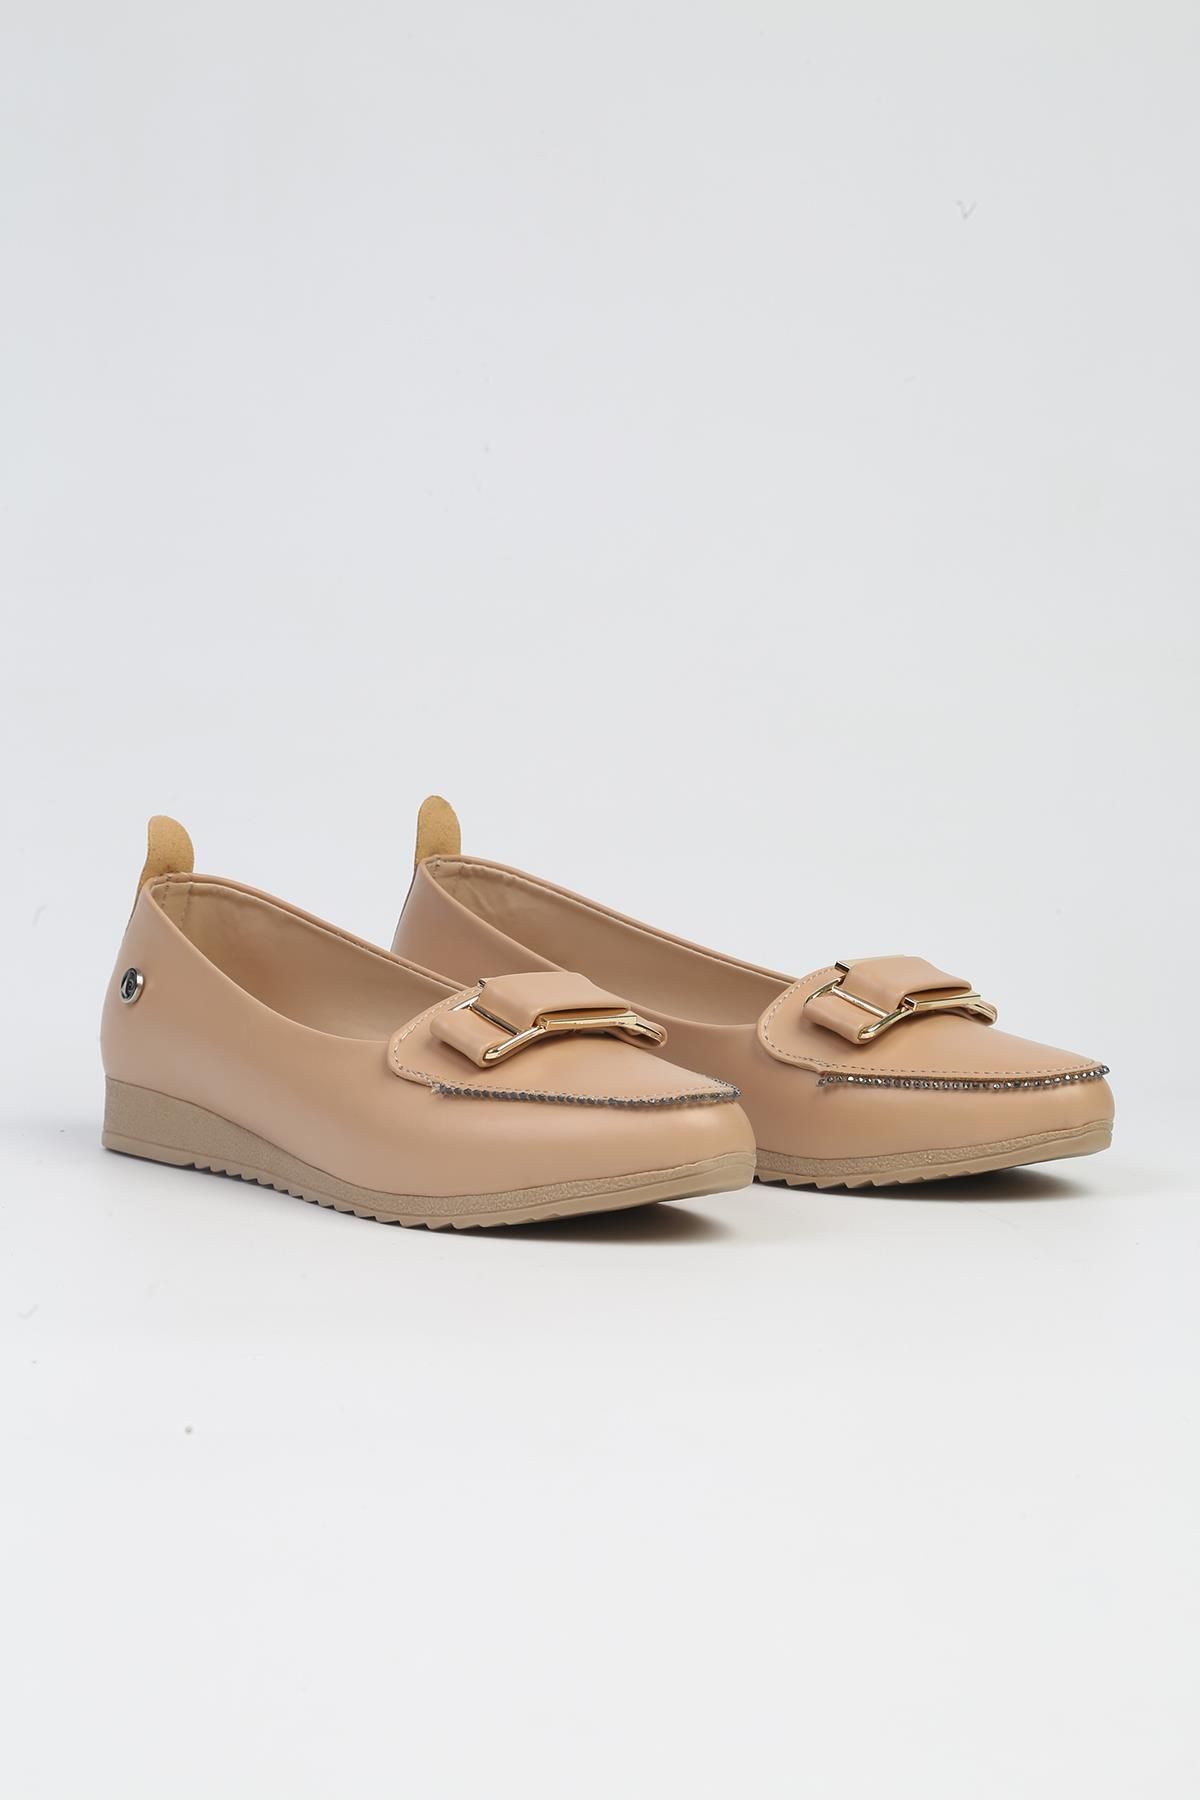 Pierre Cardin ® | PC-53020- 3962 Krem-Kadın Günlük Ayakkabı